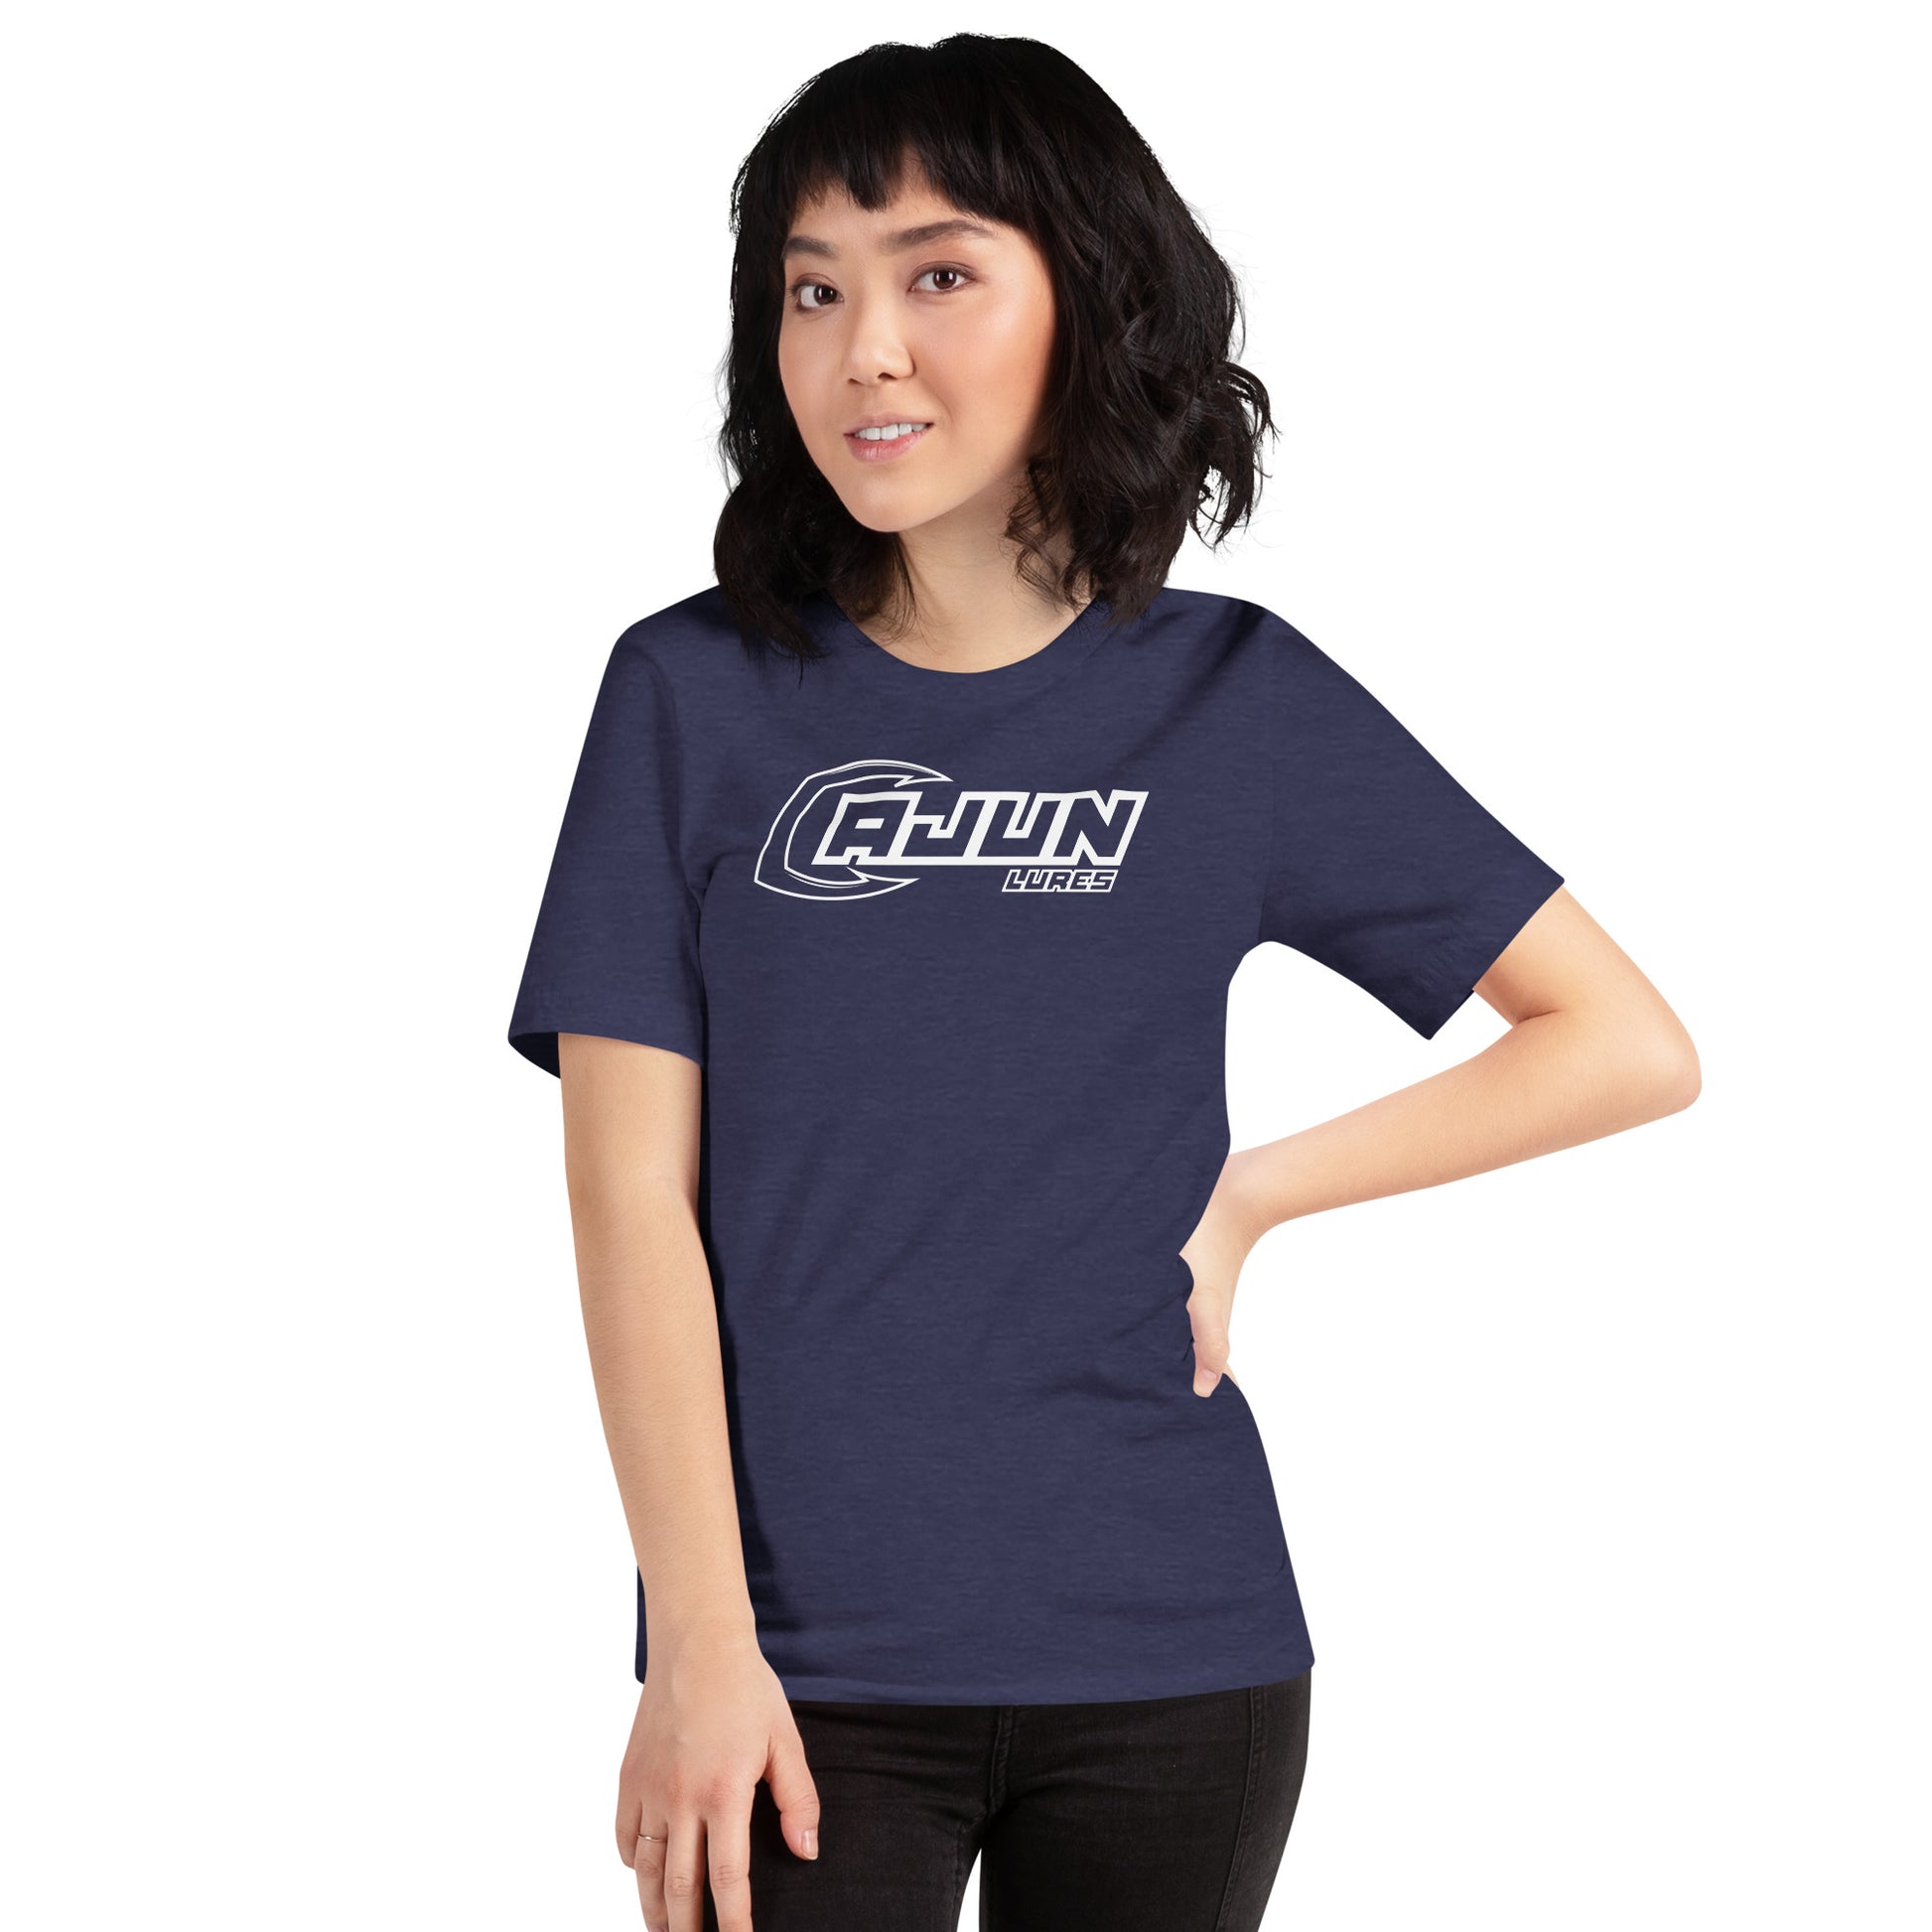 Cajun Women's T-shirt